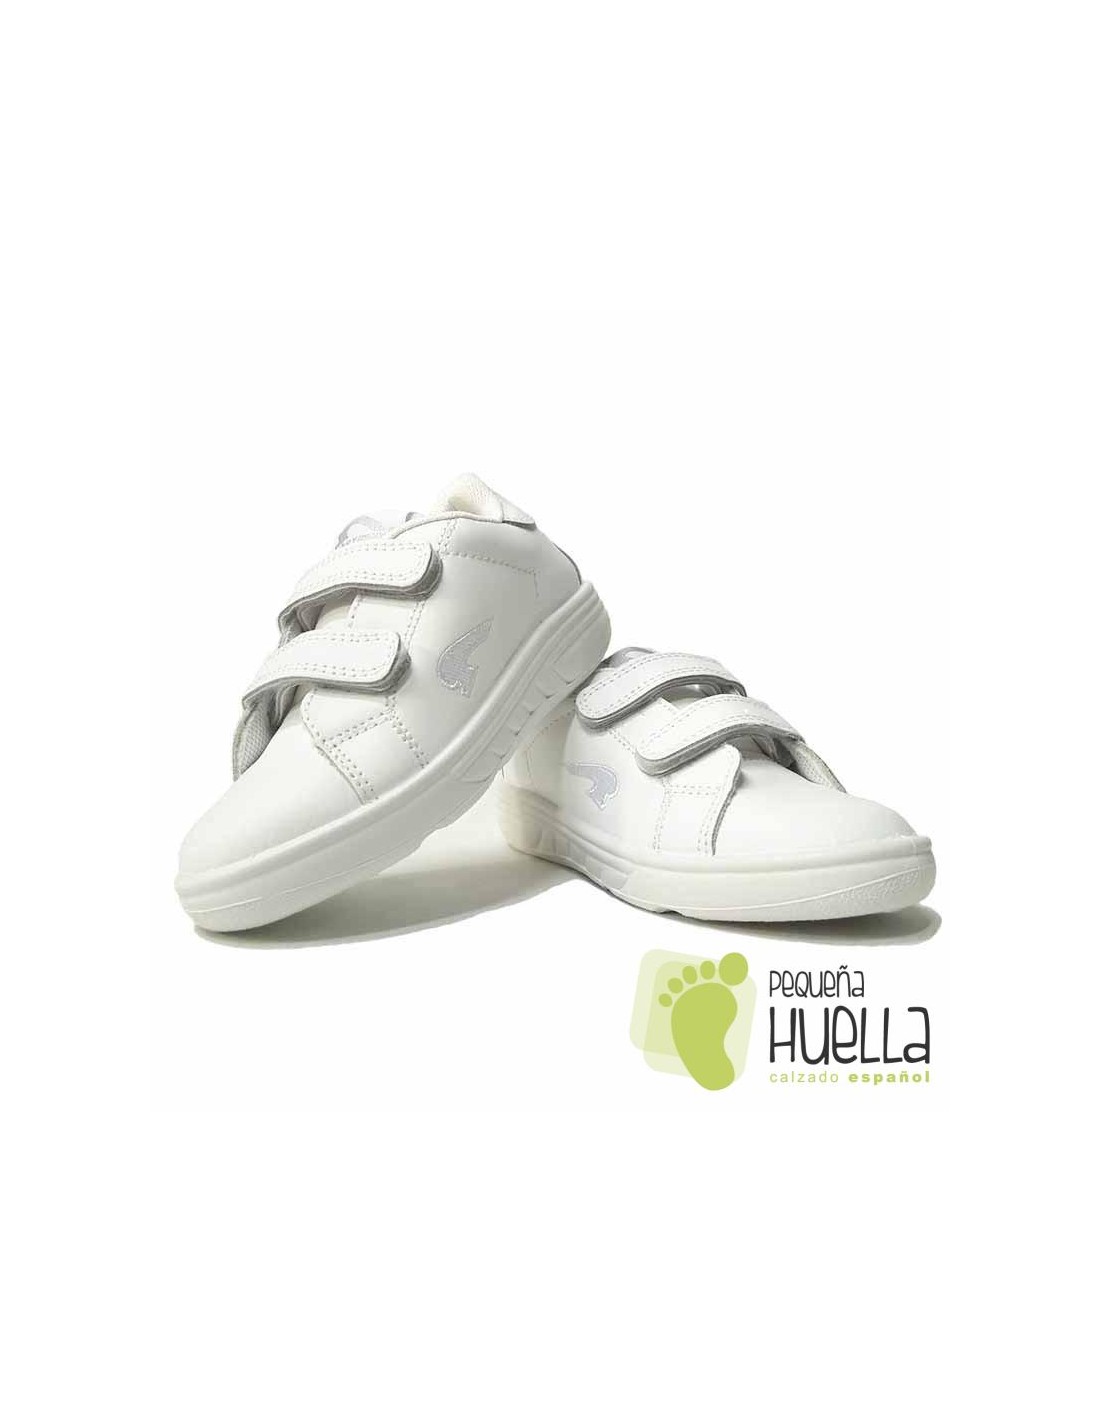 Comprar zapatillas deportivas blancas para chicos en Madrid y Online